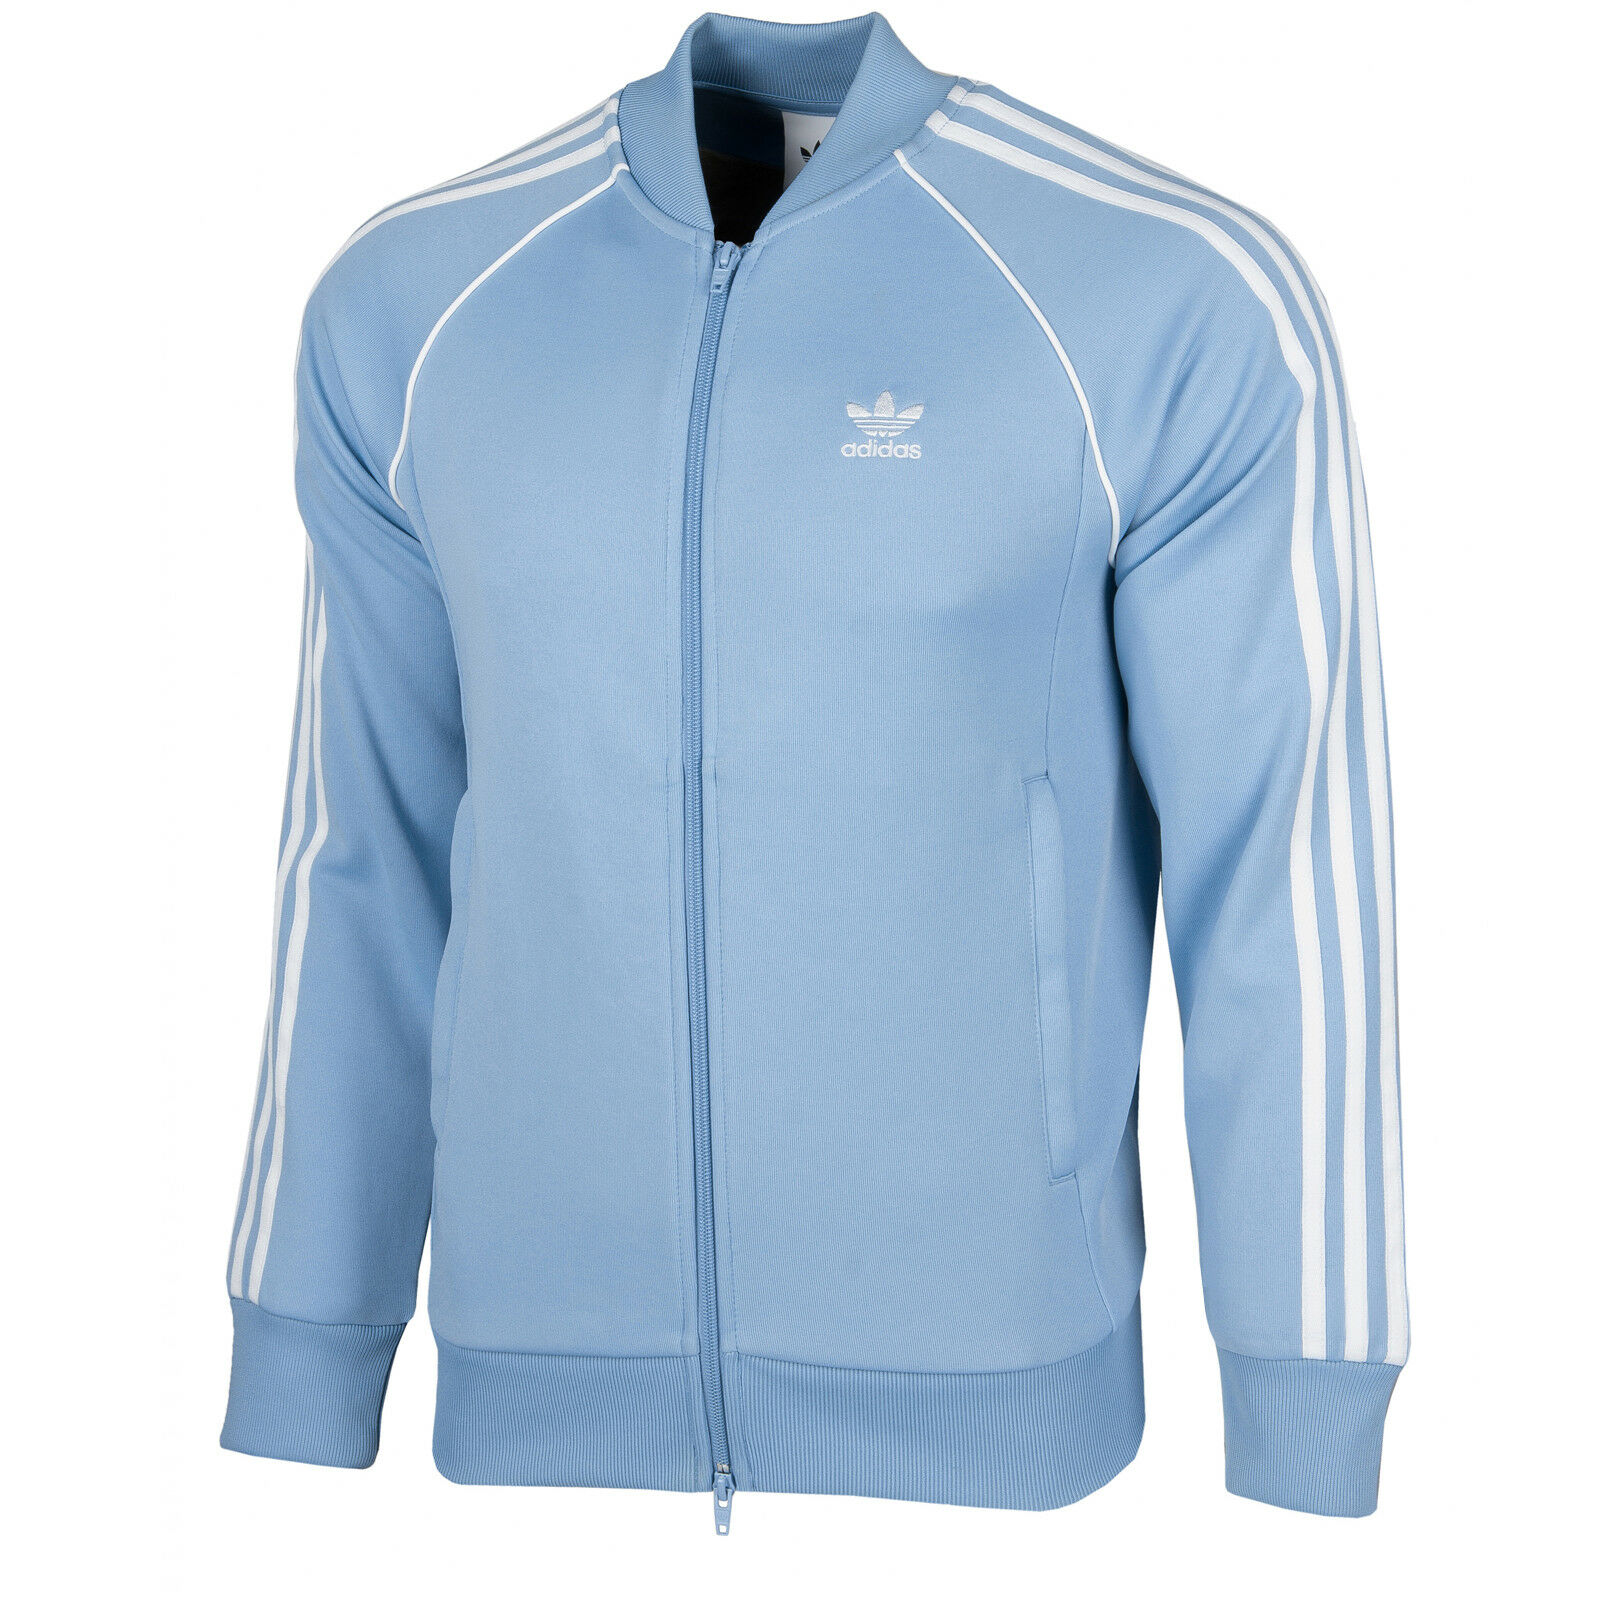 Adidas Originals Men's Superstar Track Jacket Light Blue CE8040 | eBay